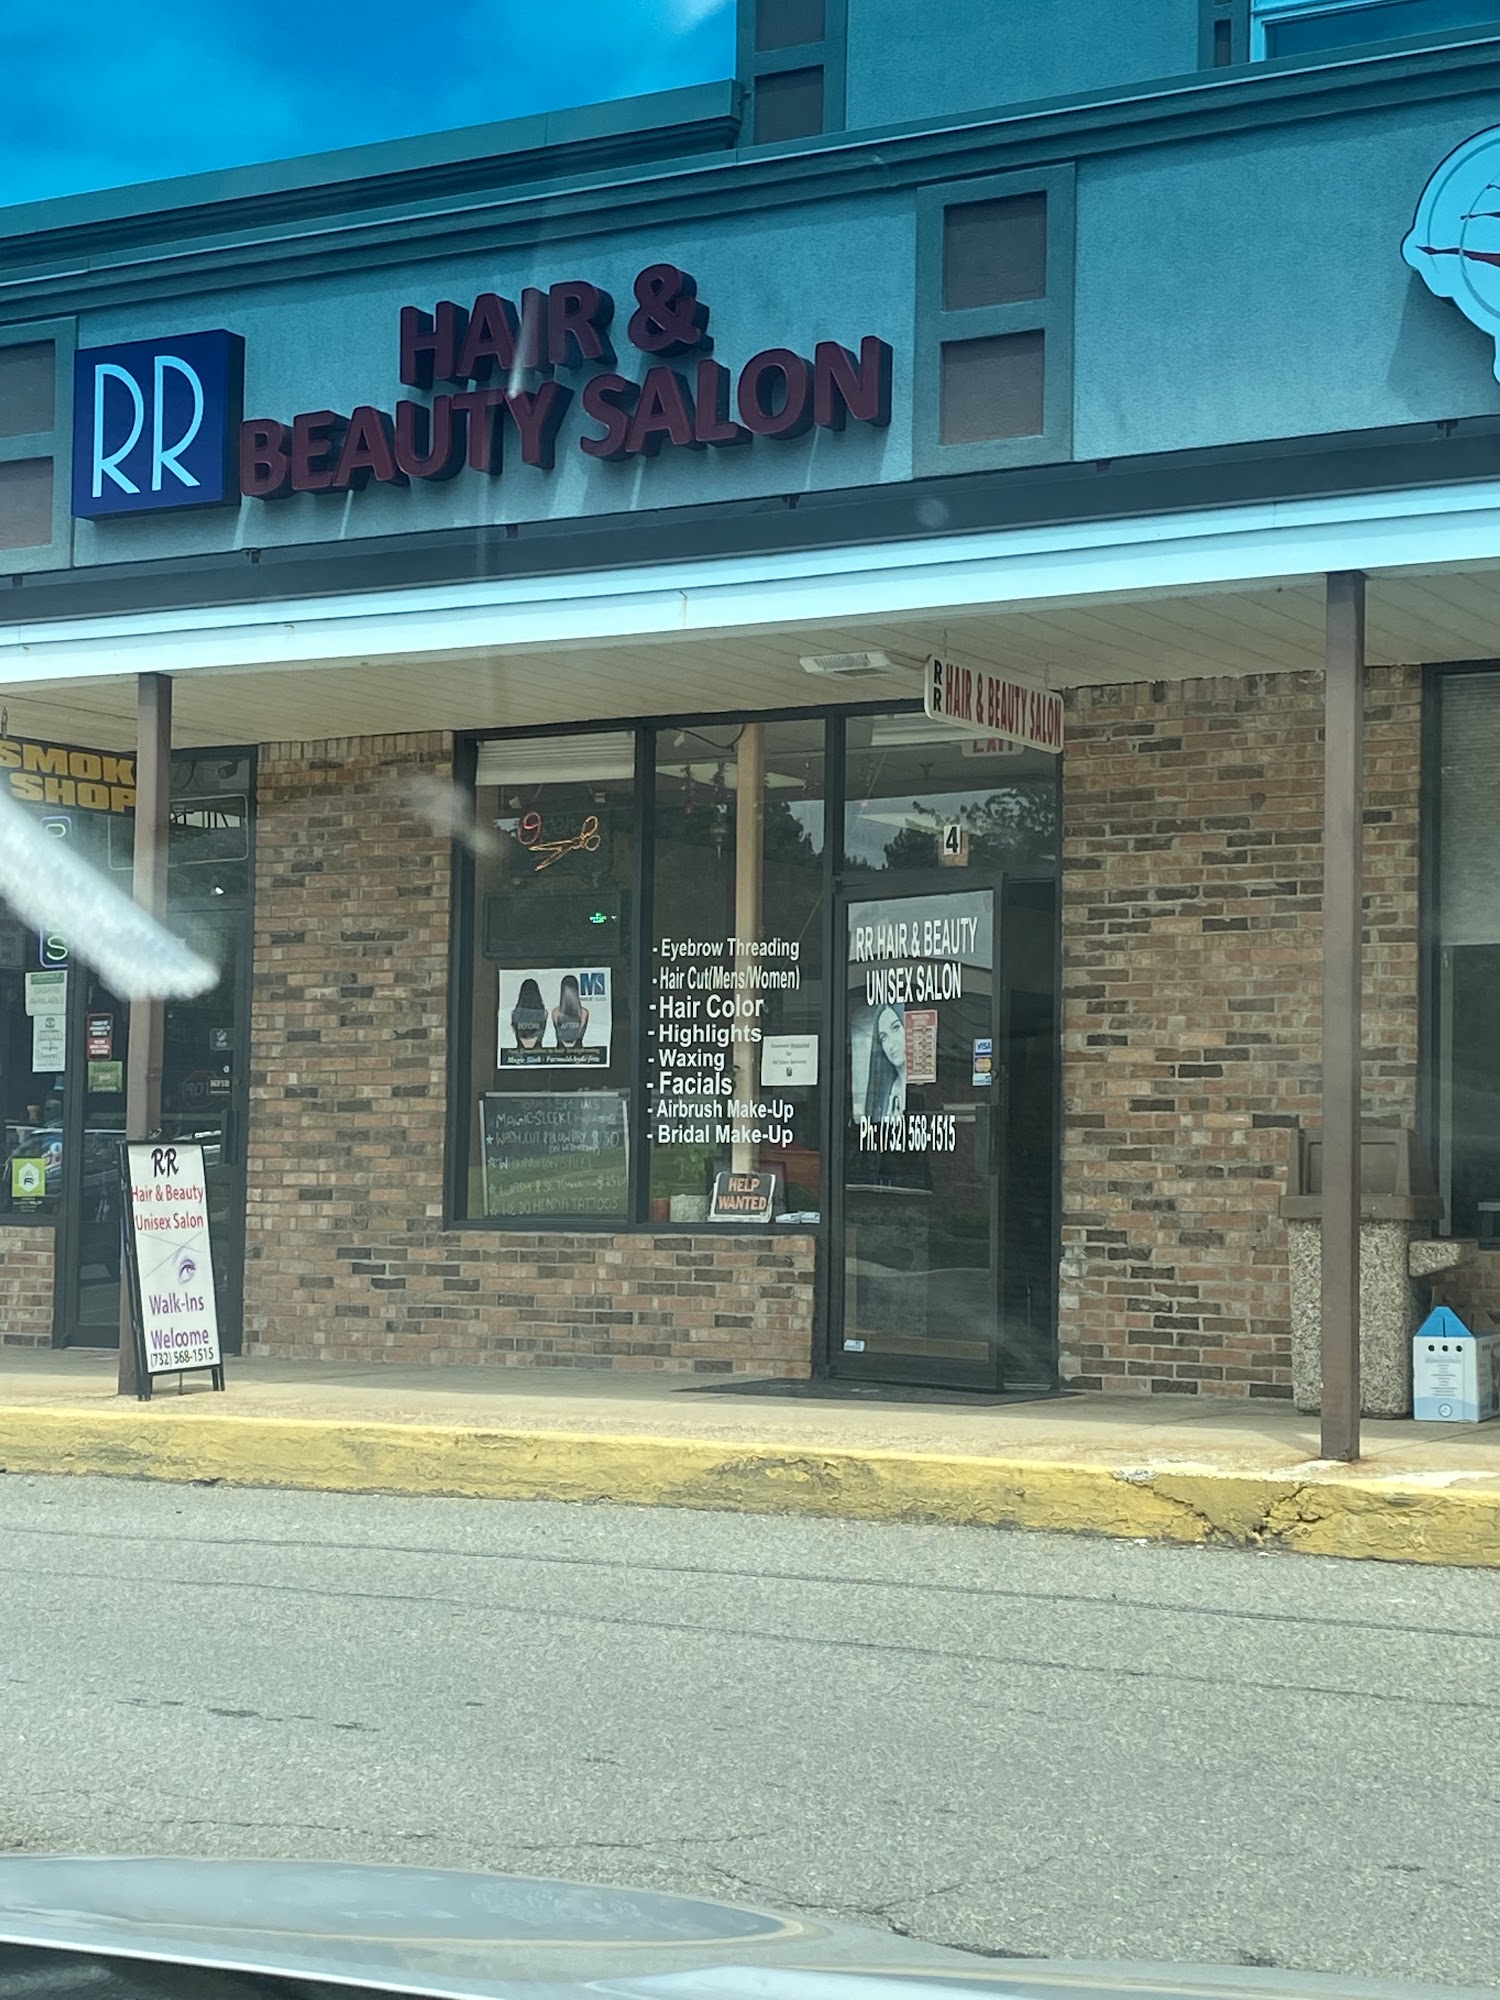 R R Hair & Beauty Salon